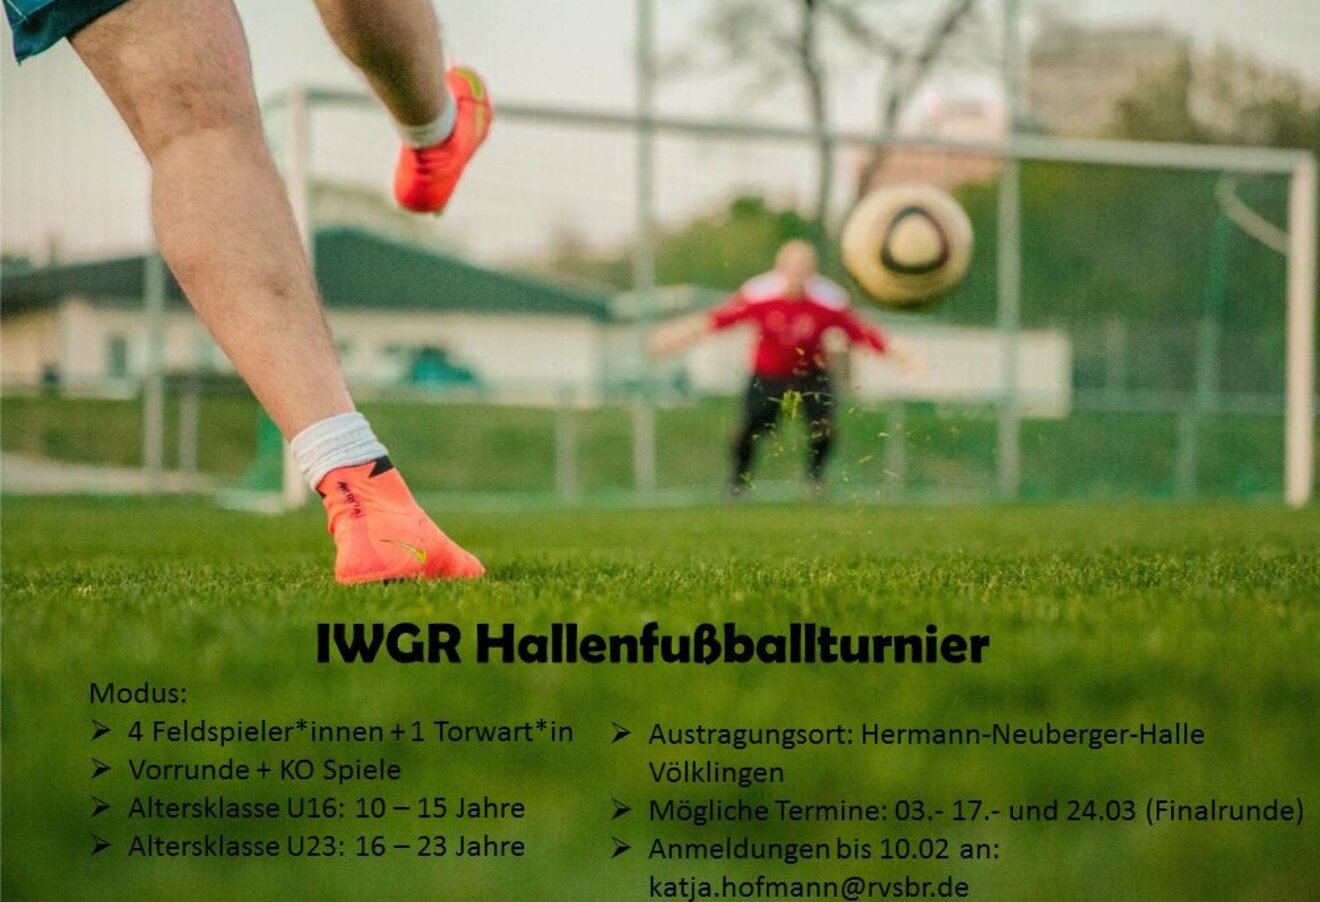 IWGR_Hallenfussballturnier